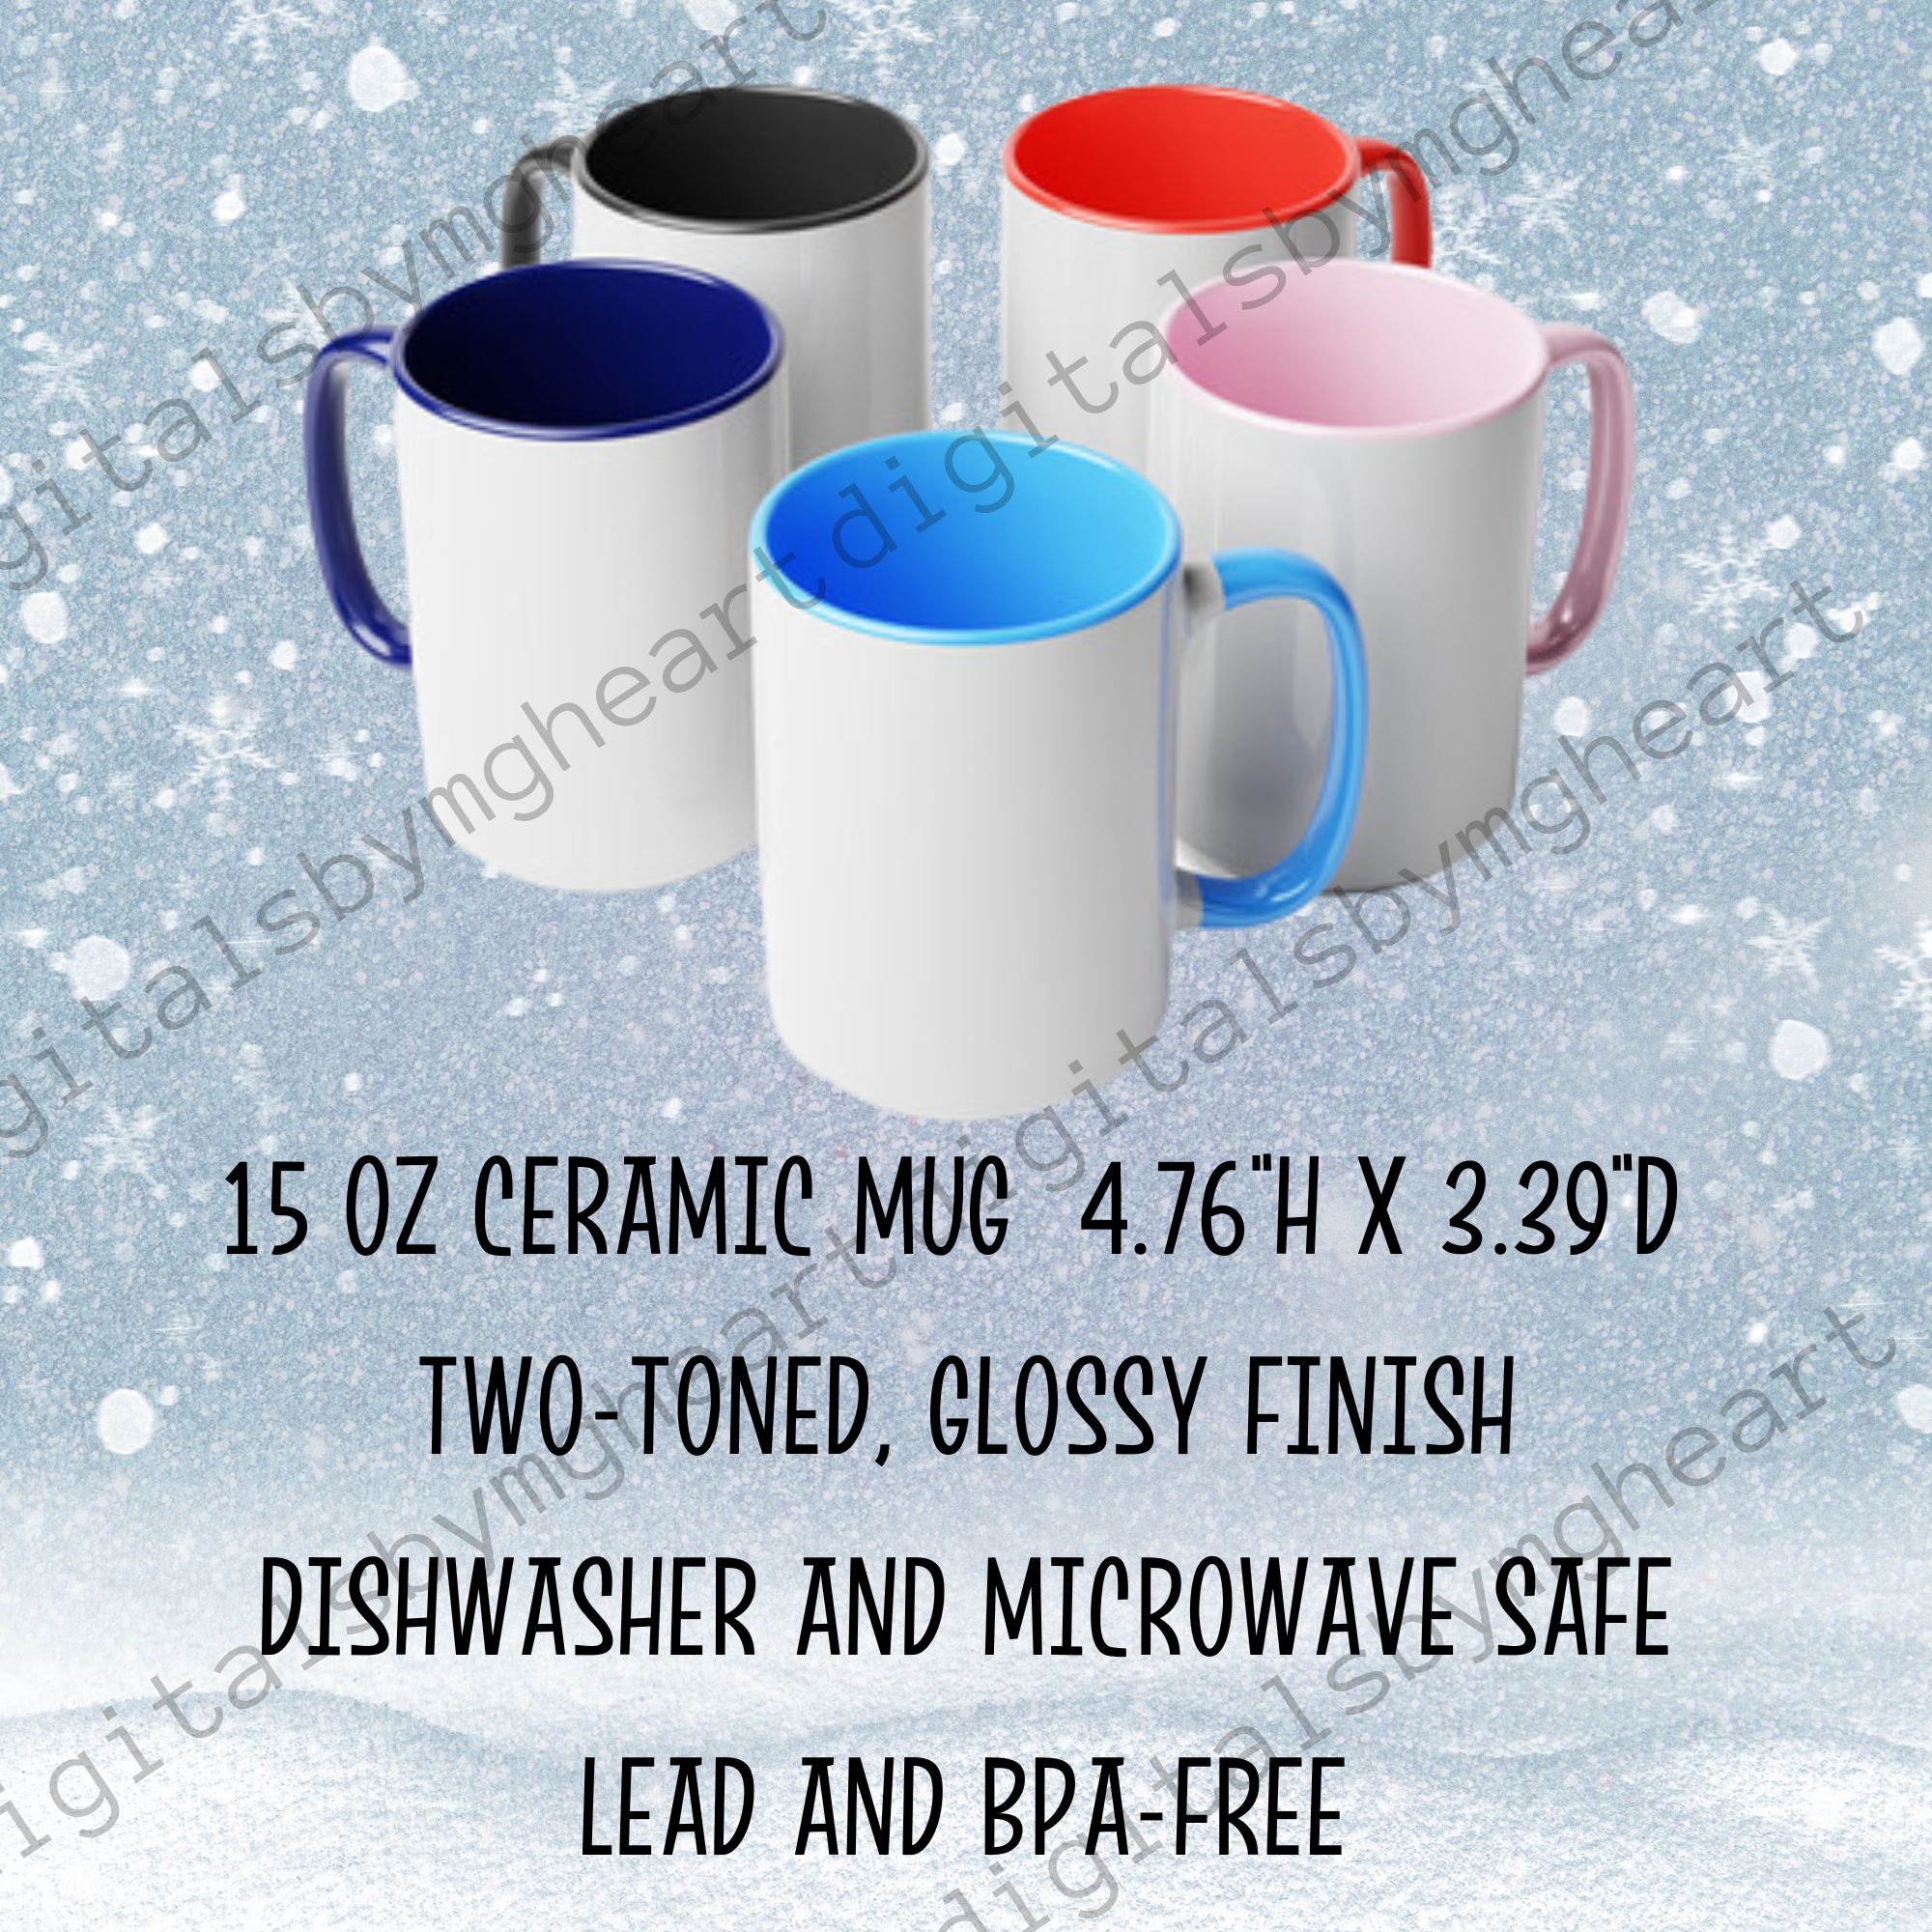 Want a Bump™ Coffee Mug, 11oz – Bump Industries